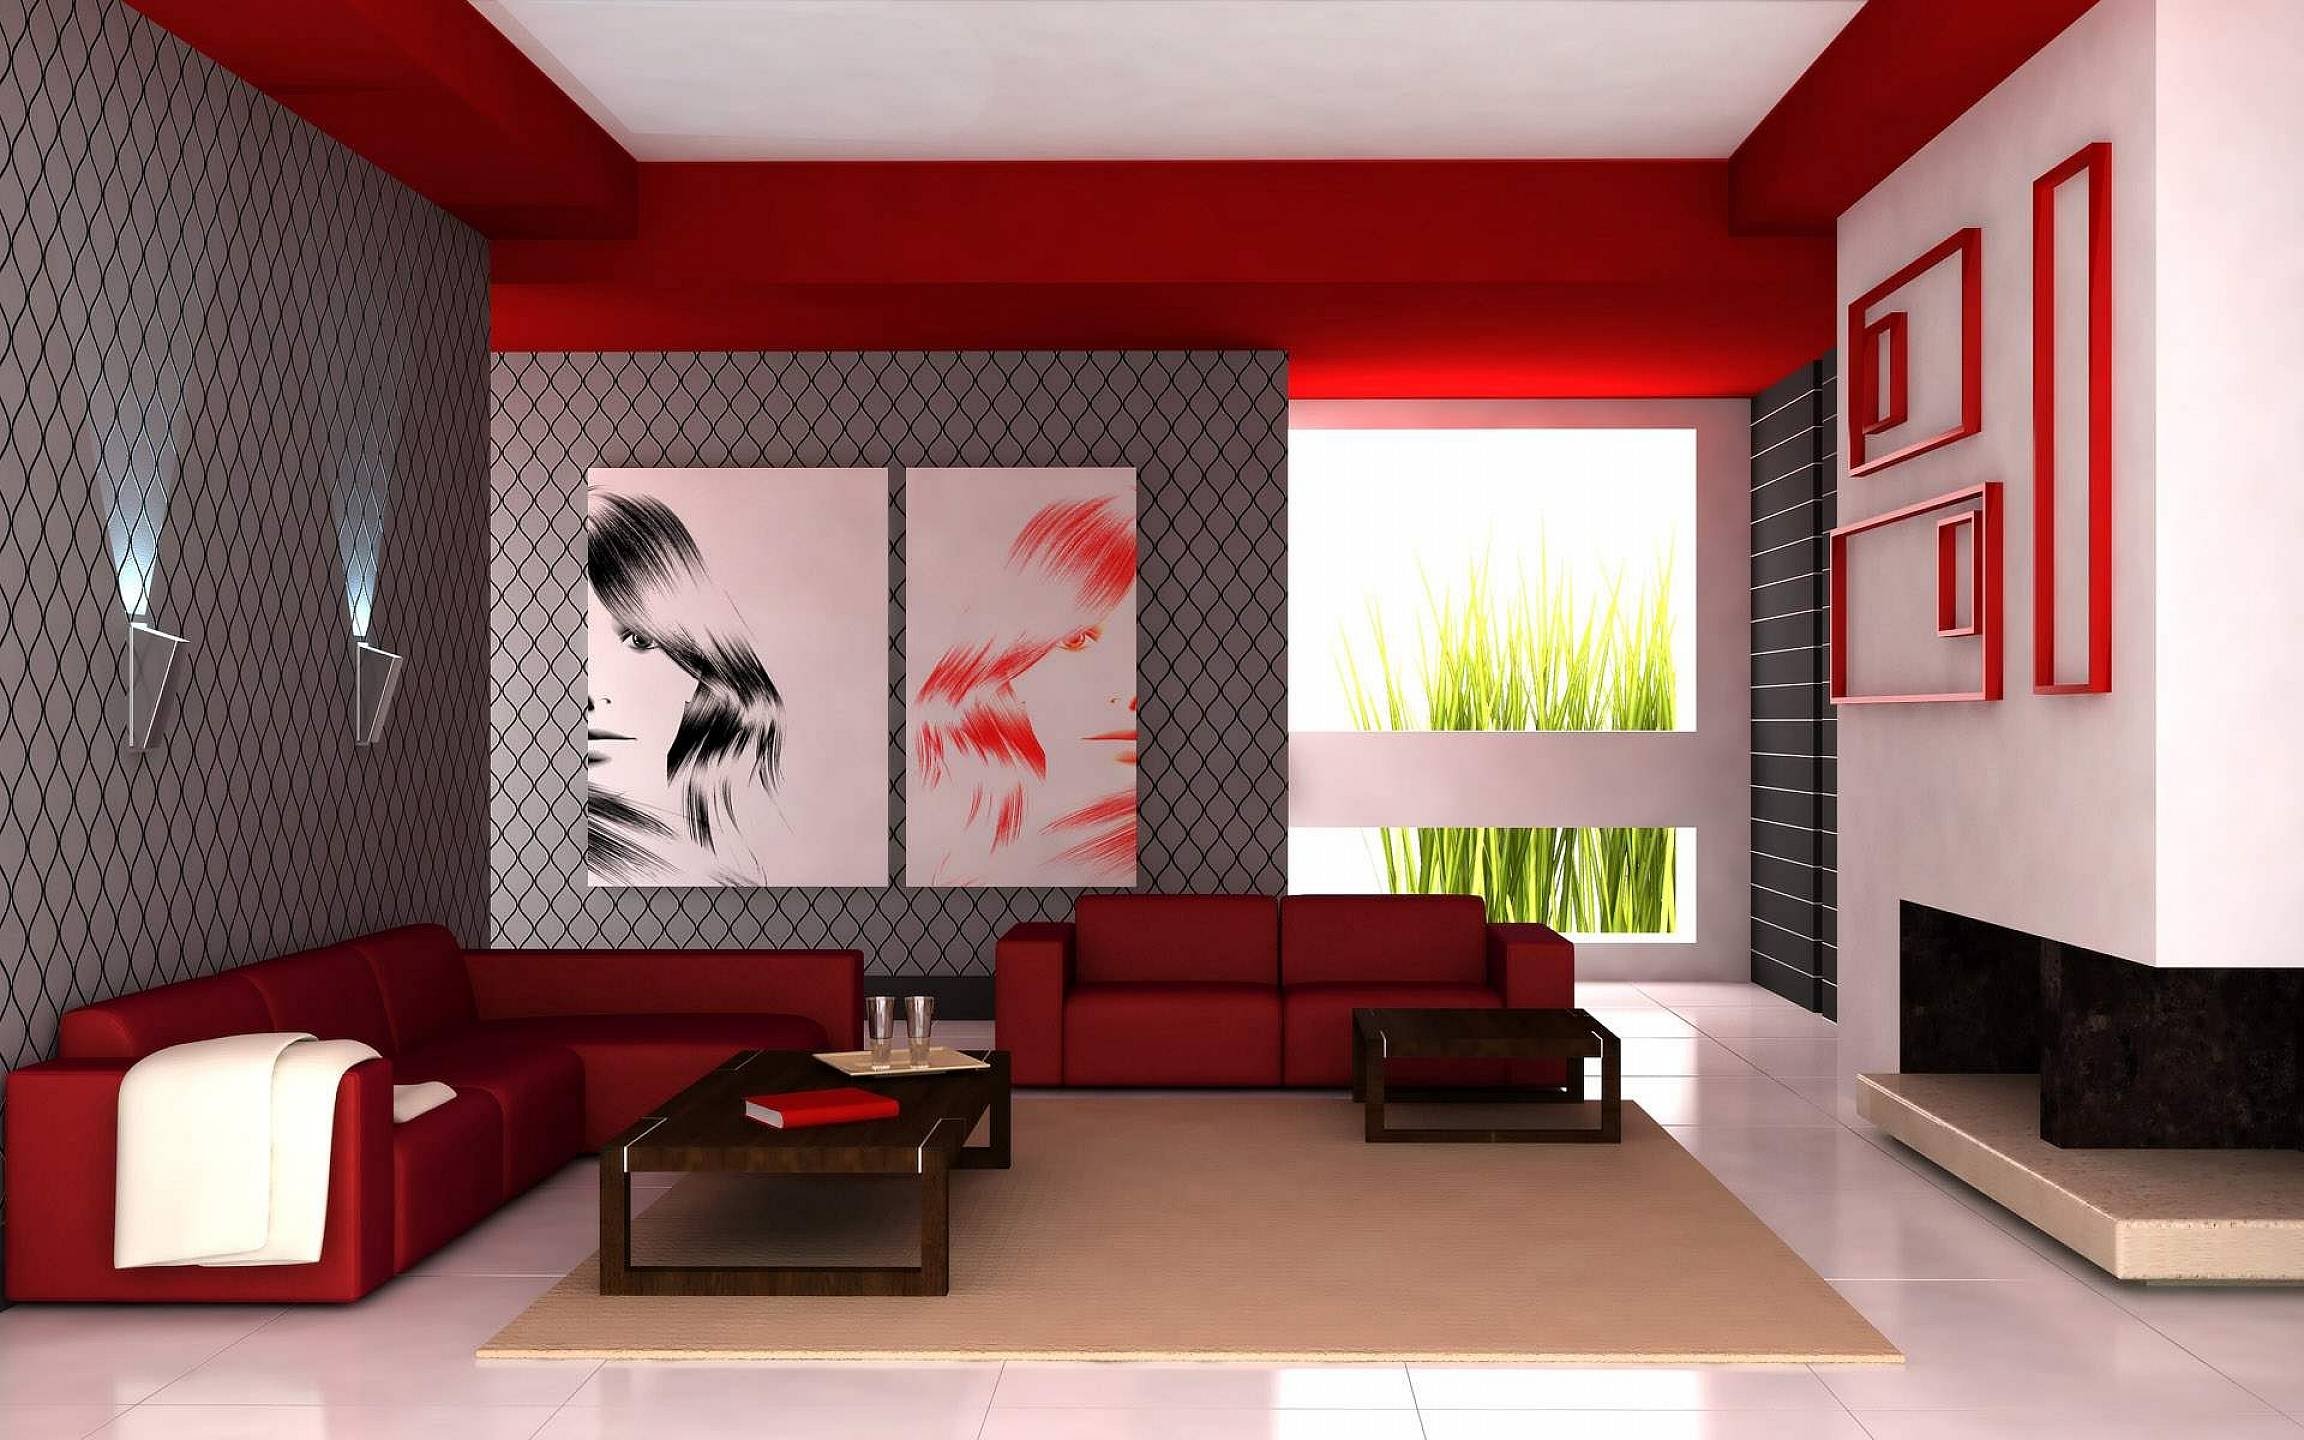 apartment, Condominium, Condo, Interior, Design, Room, House, Home, Furniture Wallpaper